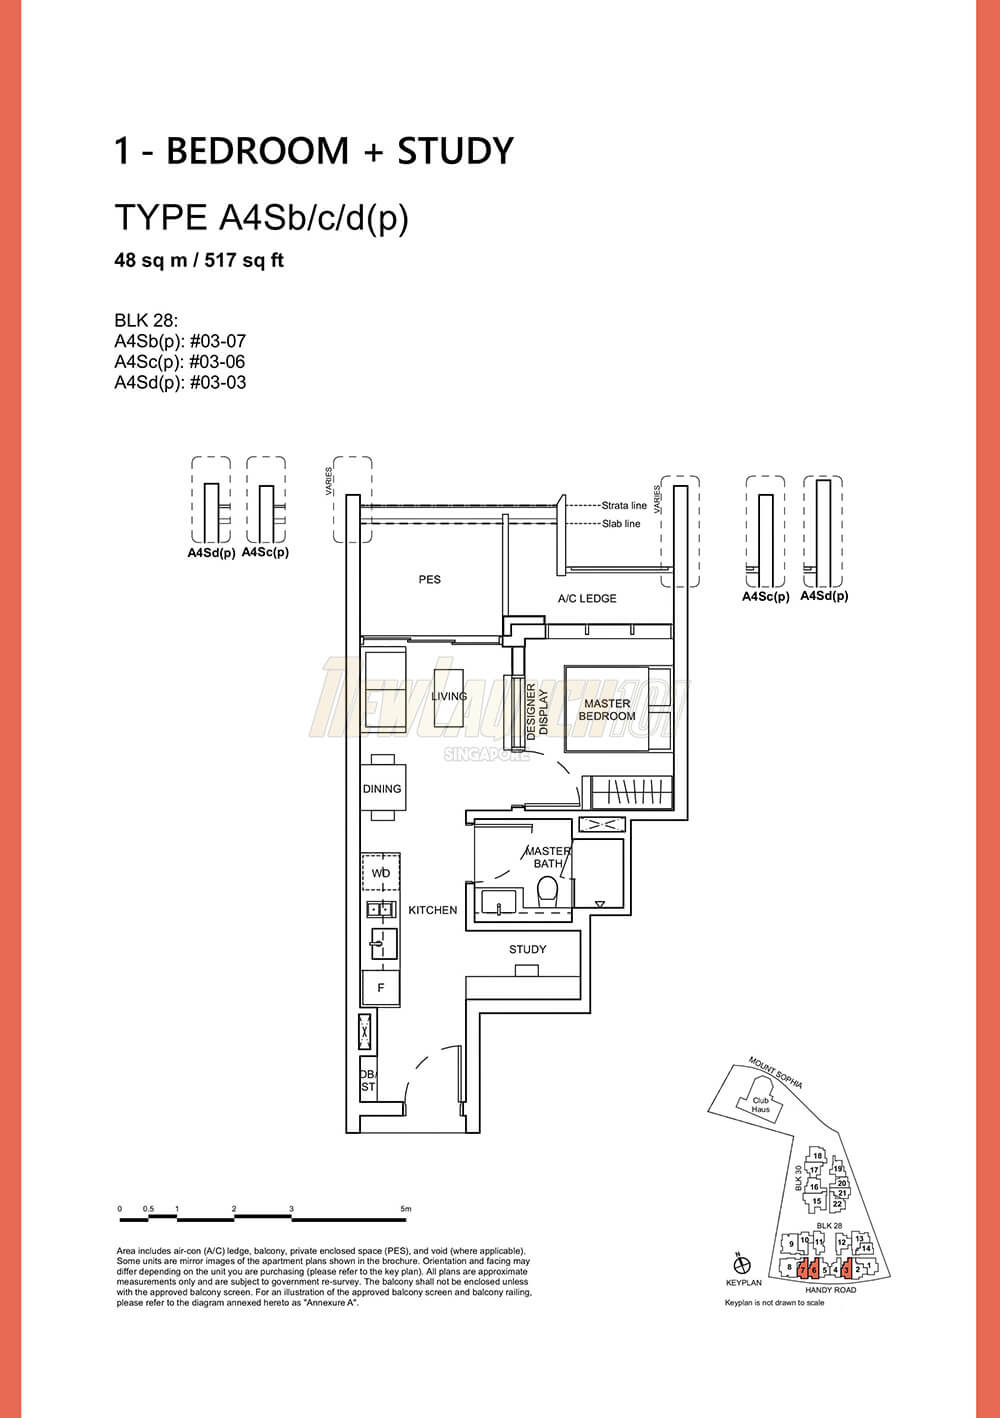 Haus on Handy Floor Plan 1-Bedroom Study Type A4Sb